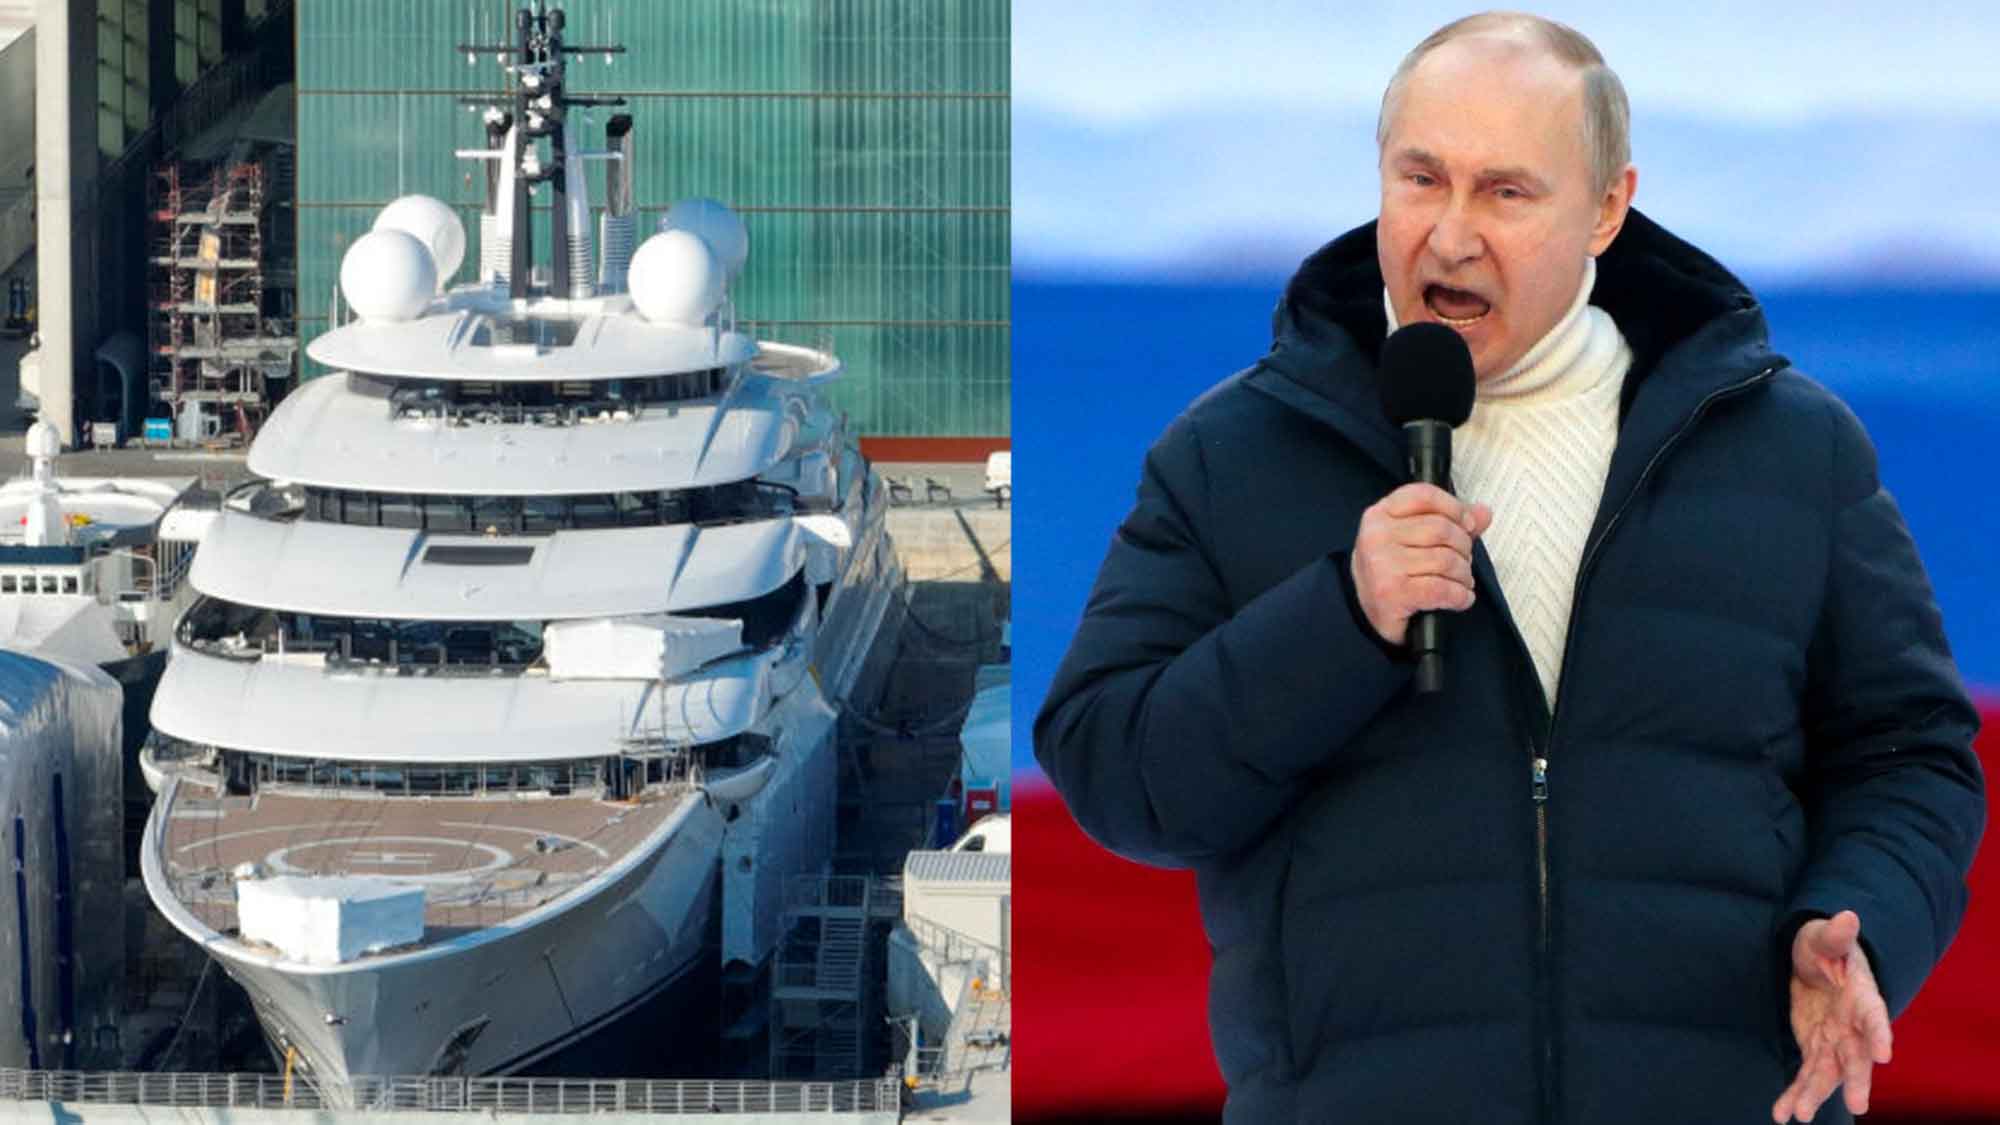 Putin Scheherazade Yacht